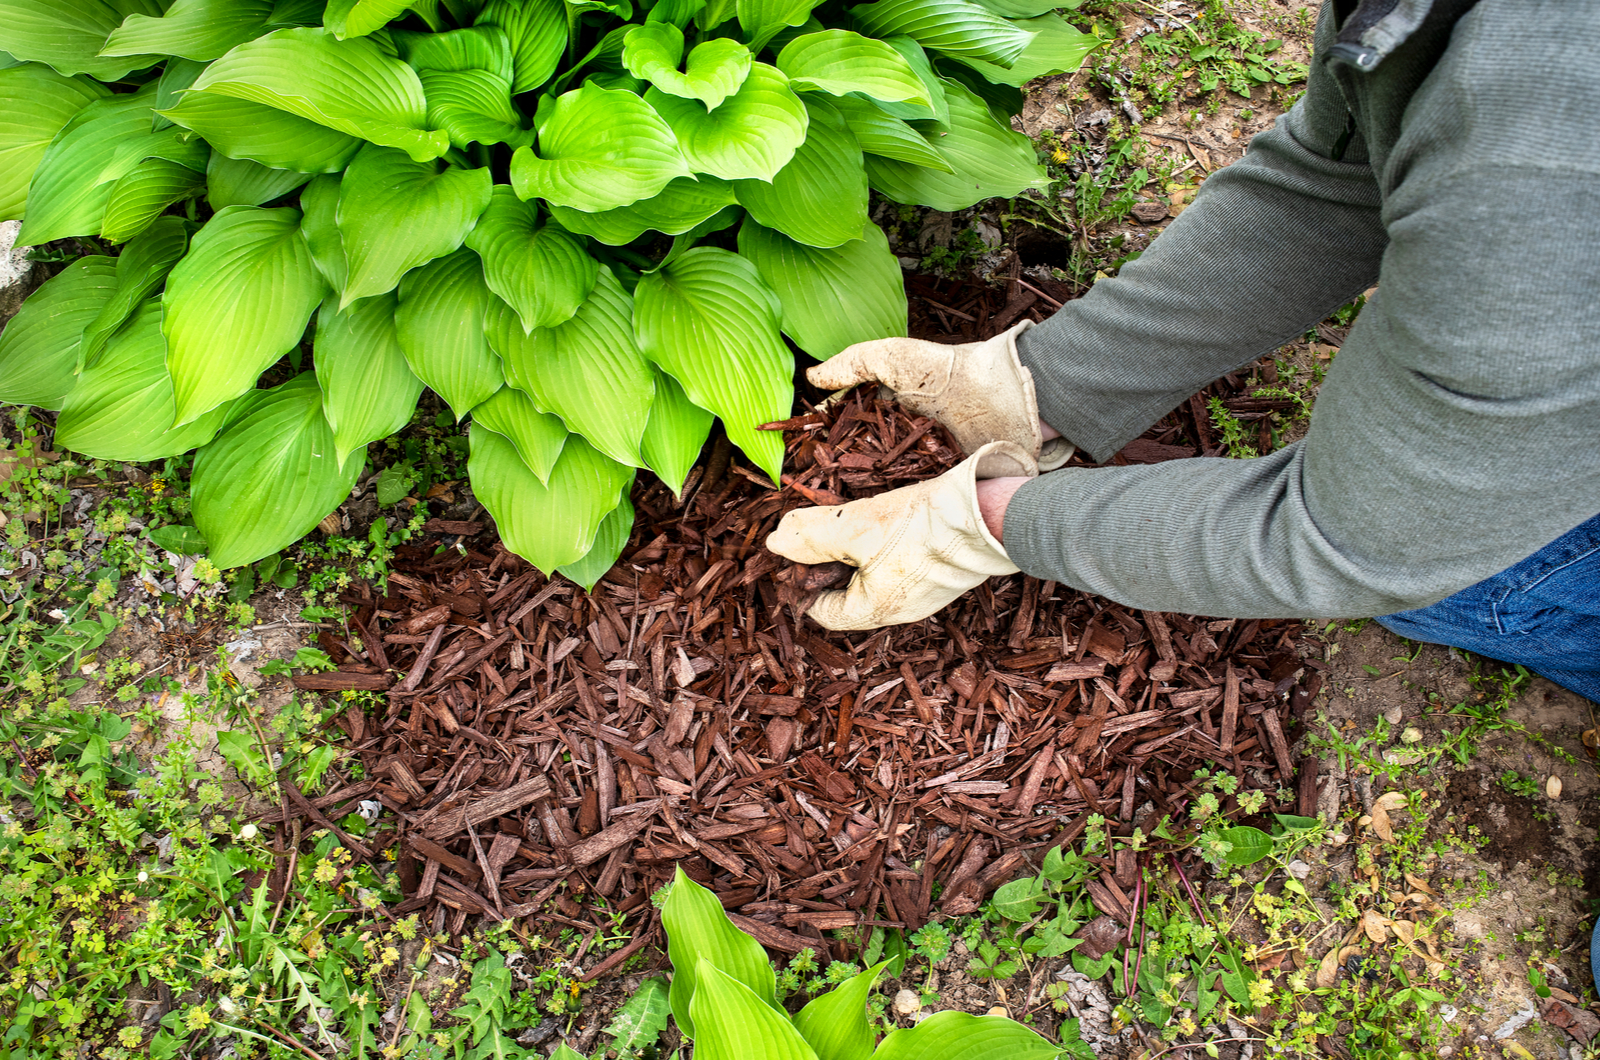 man wearing garden work gloves spreading brown wood chip mulch under green hosta plant